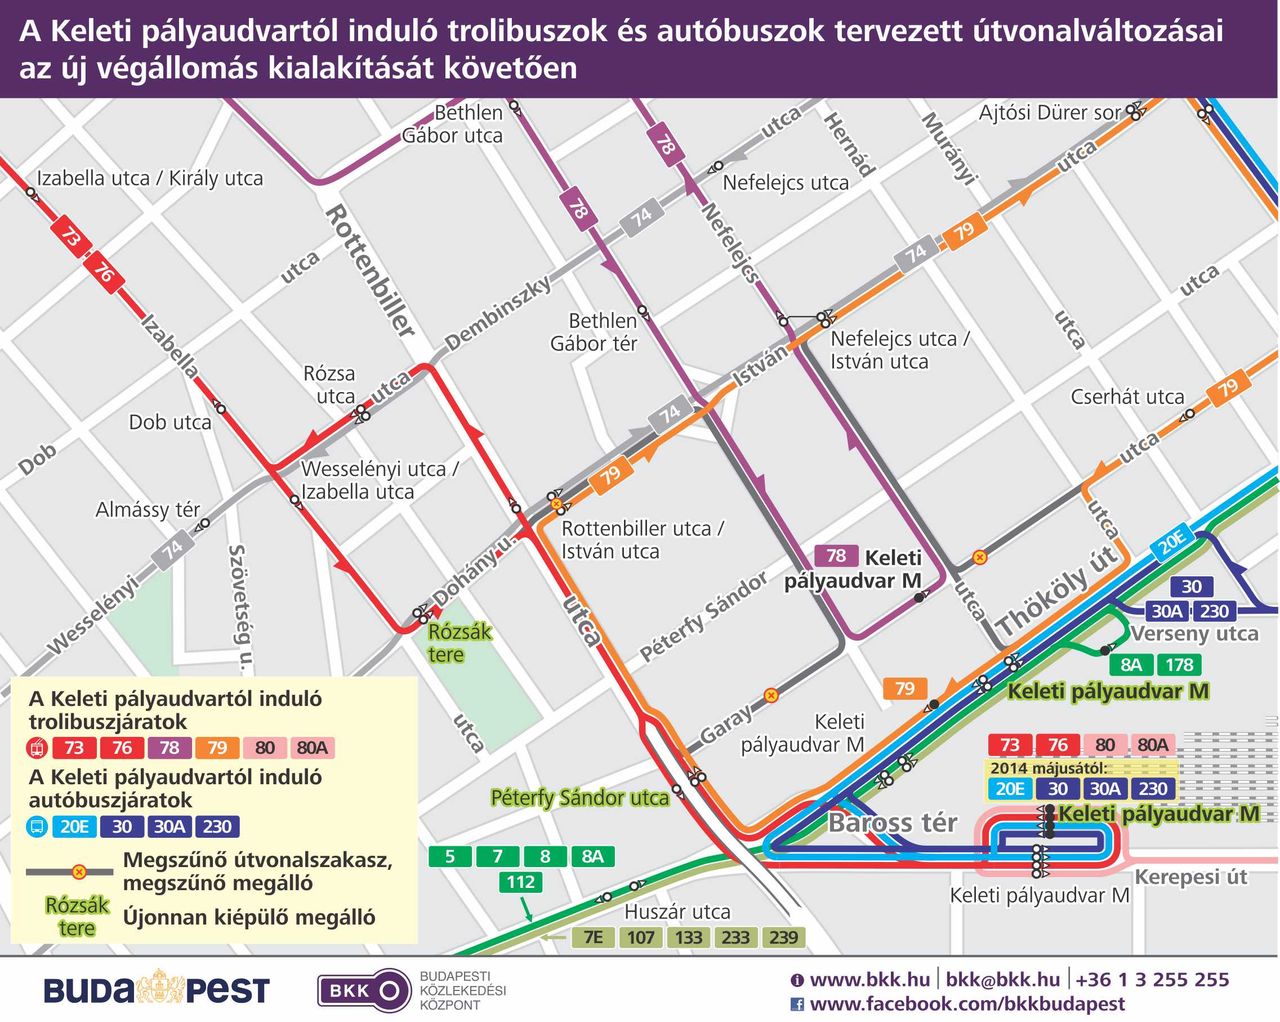 Megállóhelyek, átszállási kapcsolatok a Keleti pályaudvarnál (térkép: BKK)